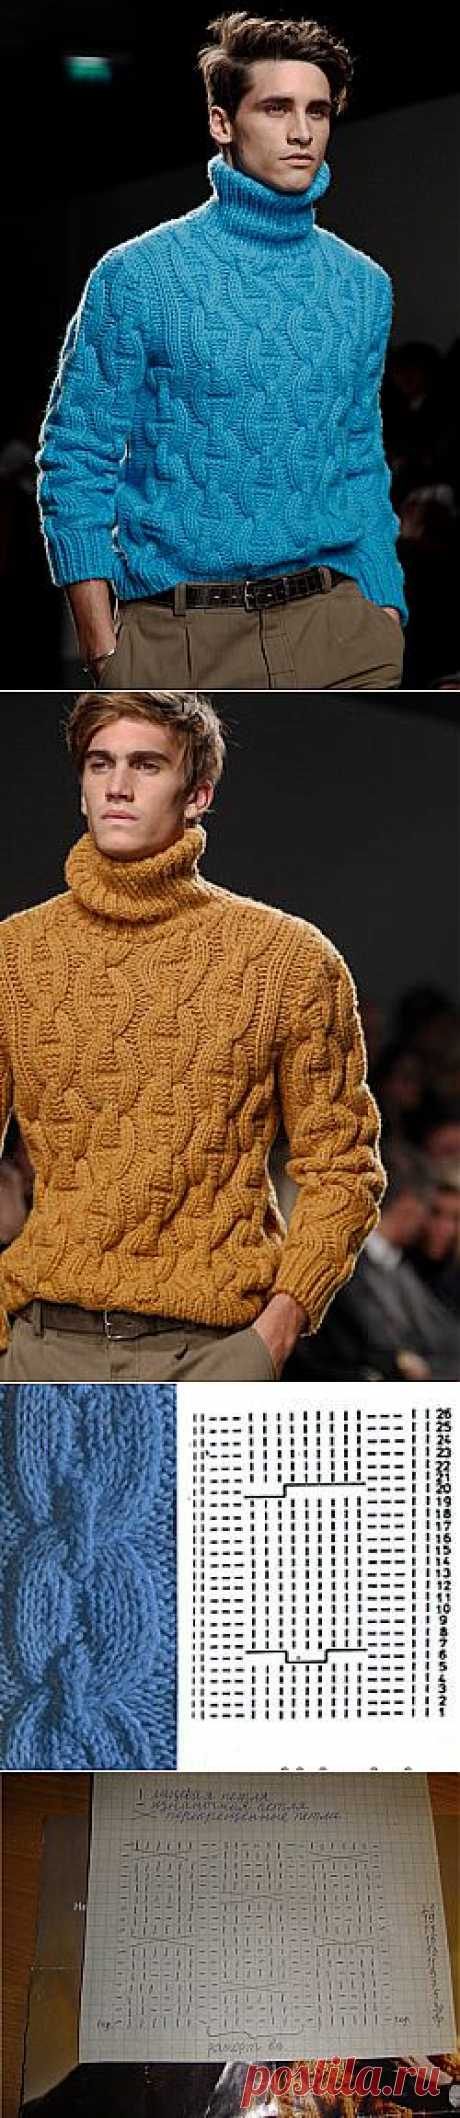 Шикарный свитер! Hermes Fall-Winter 2011-12.